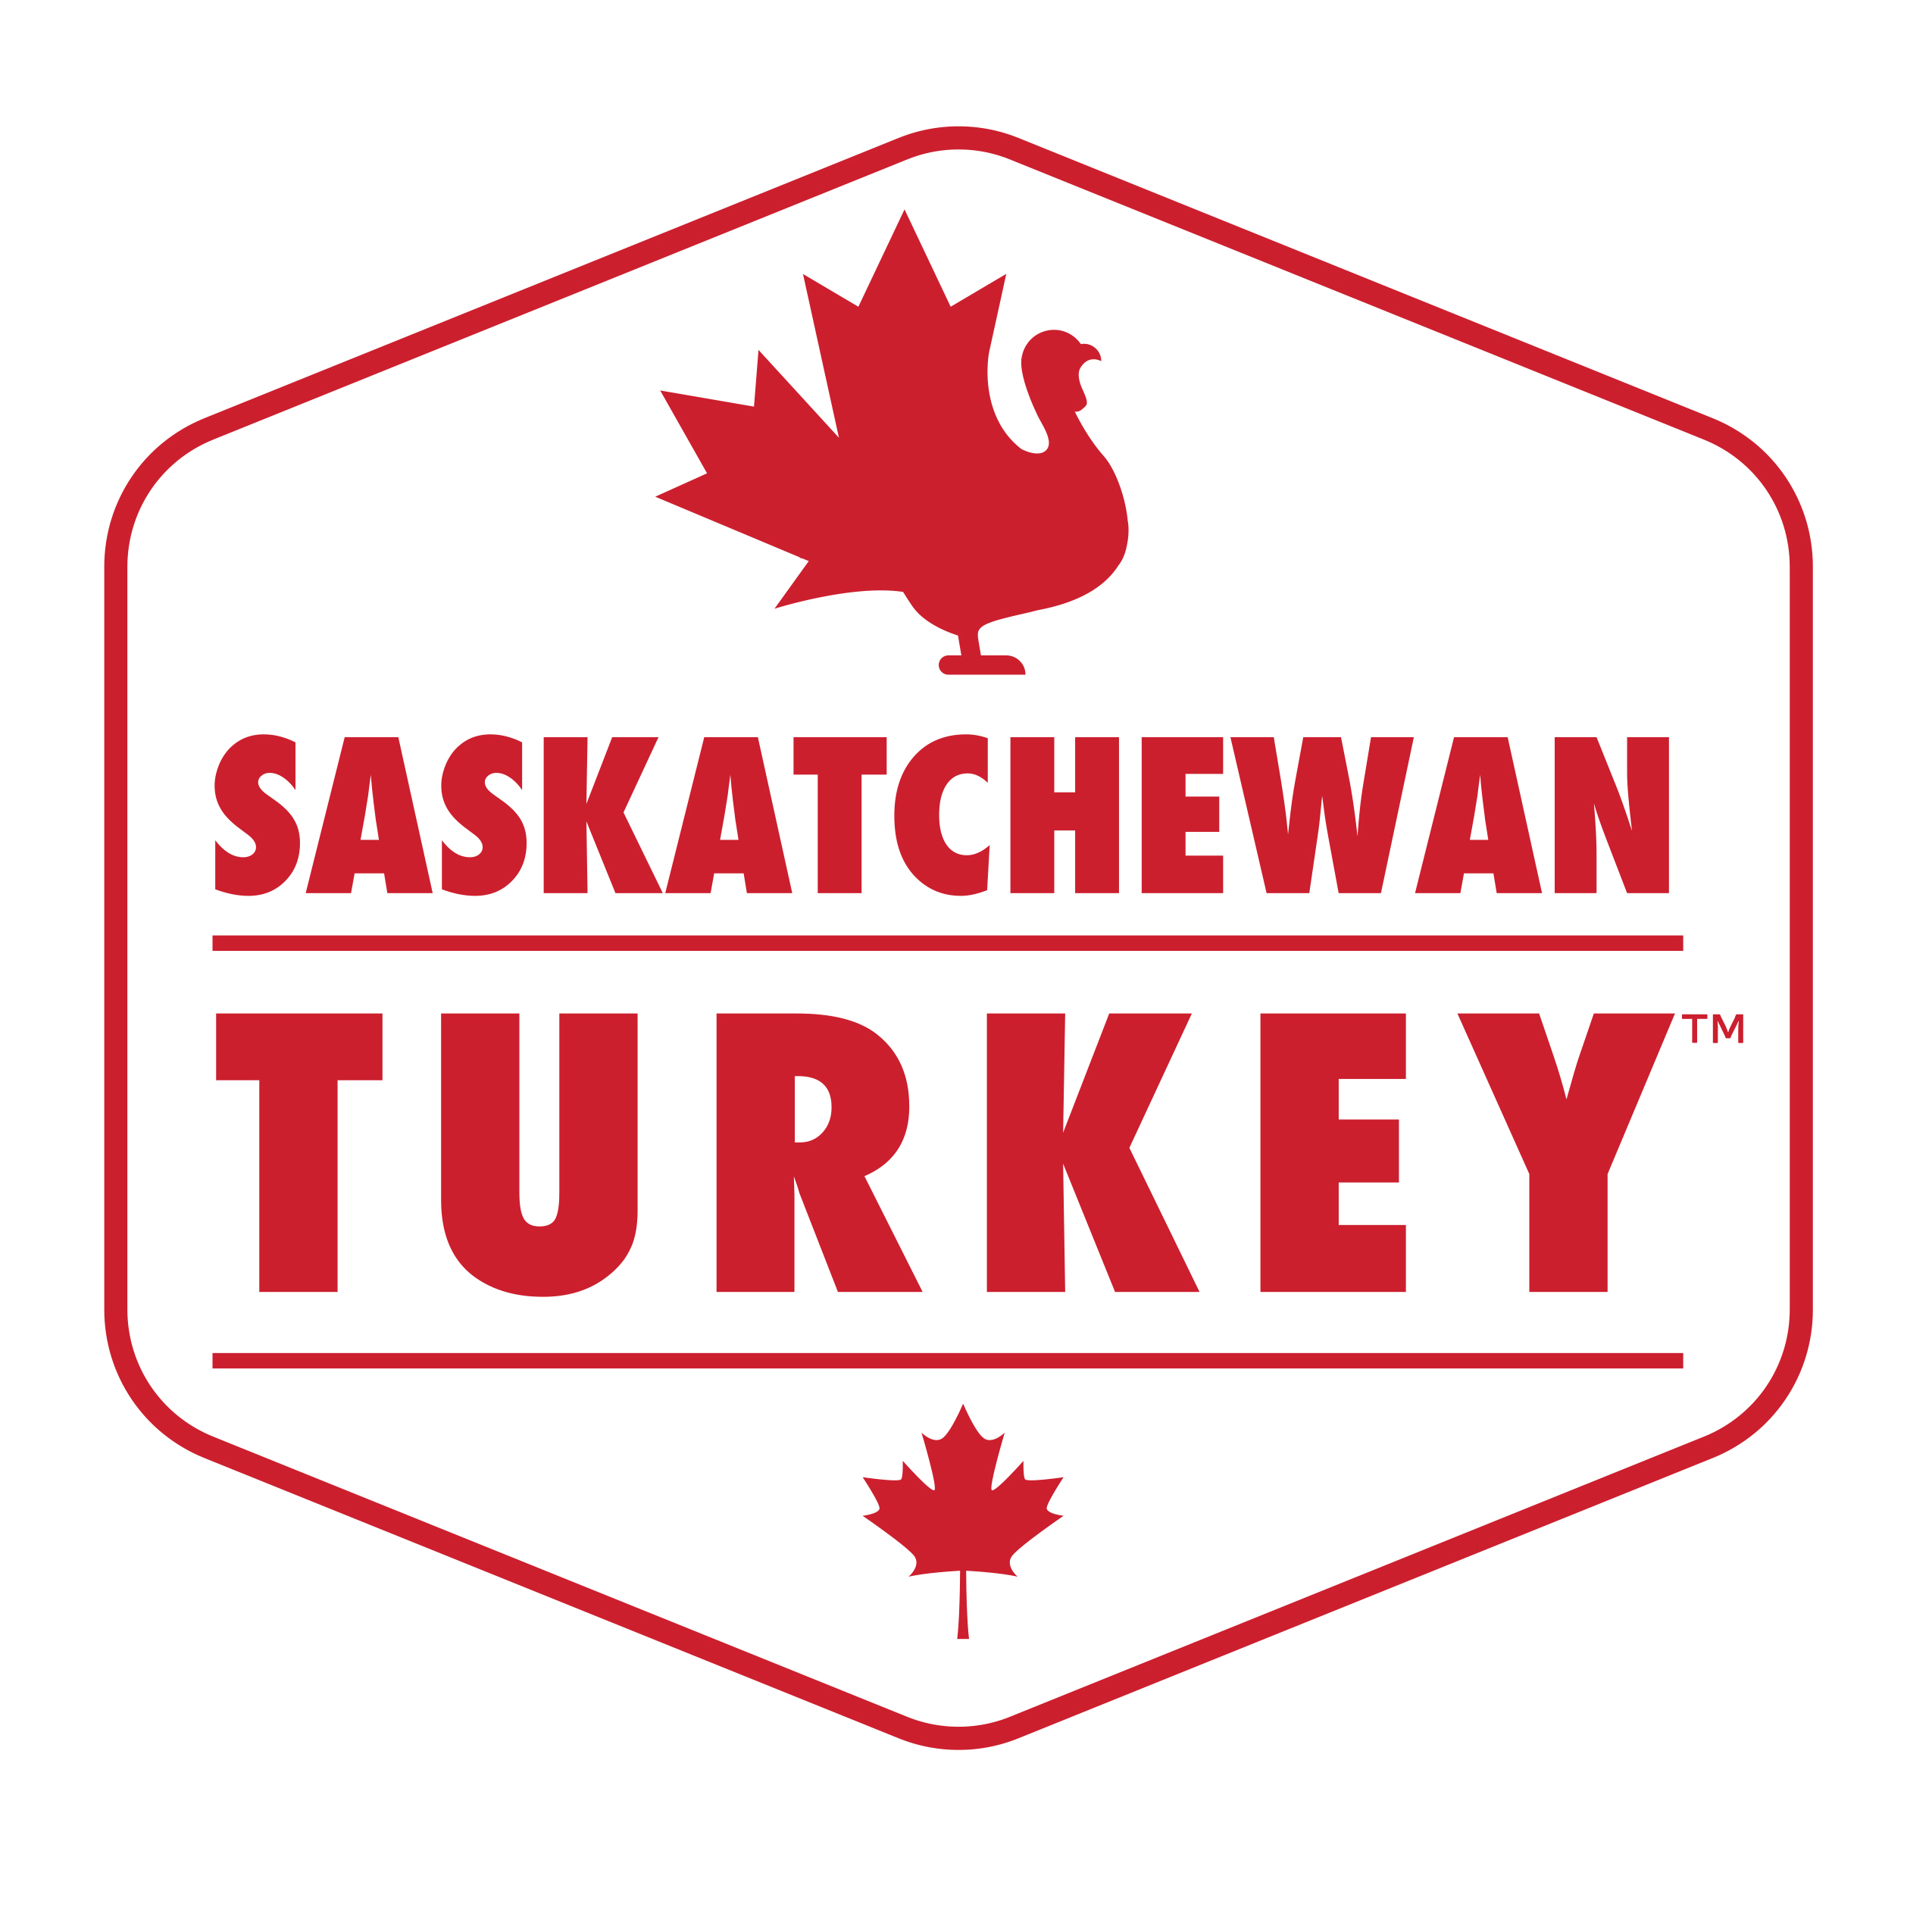 Turkey Farmers of Saskatchewan